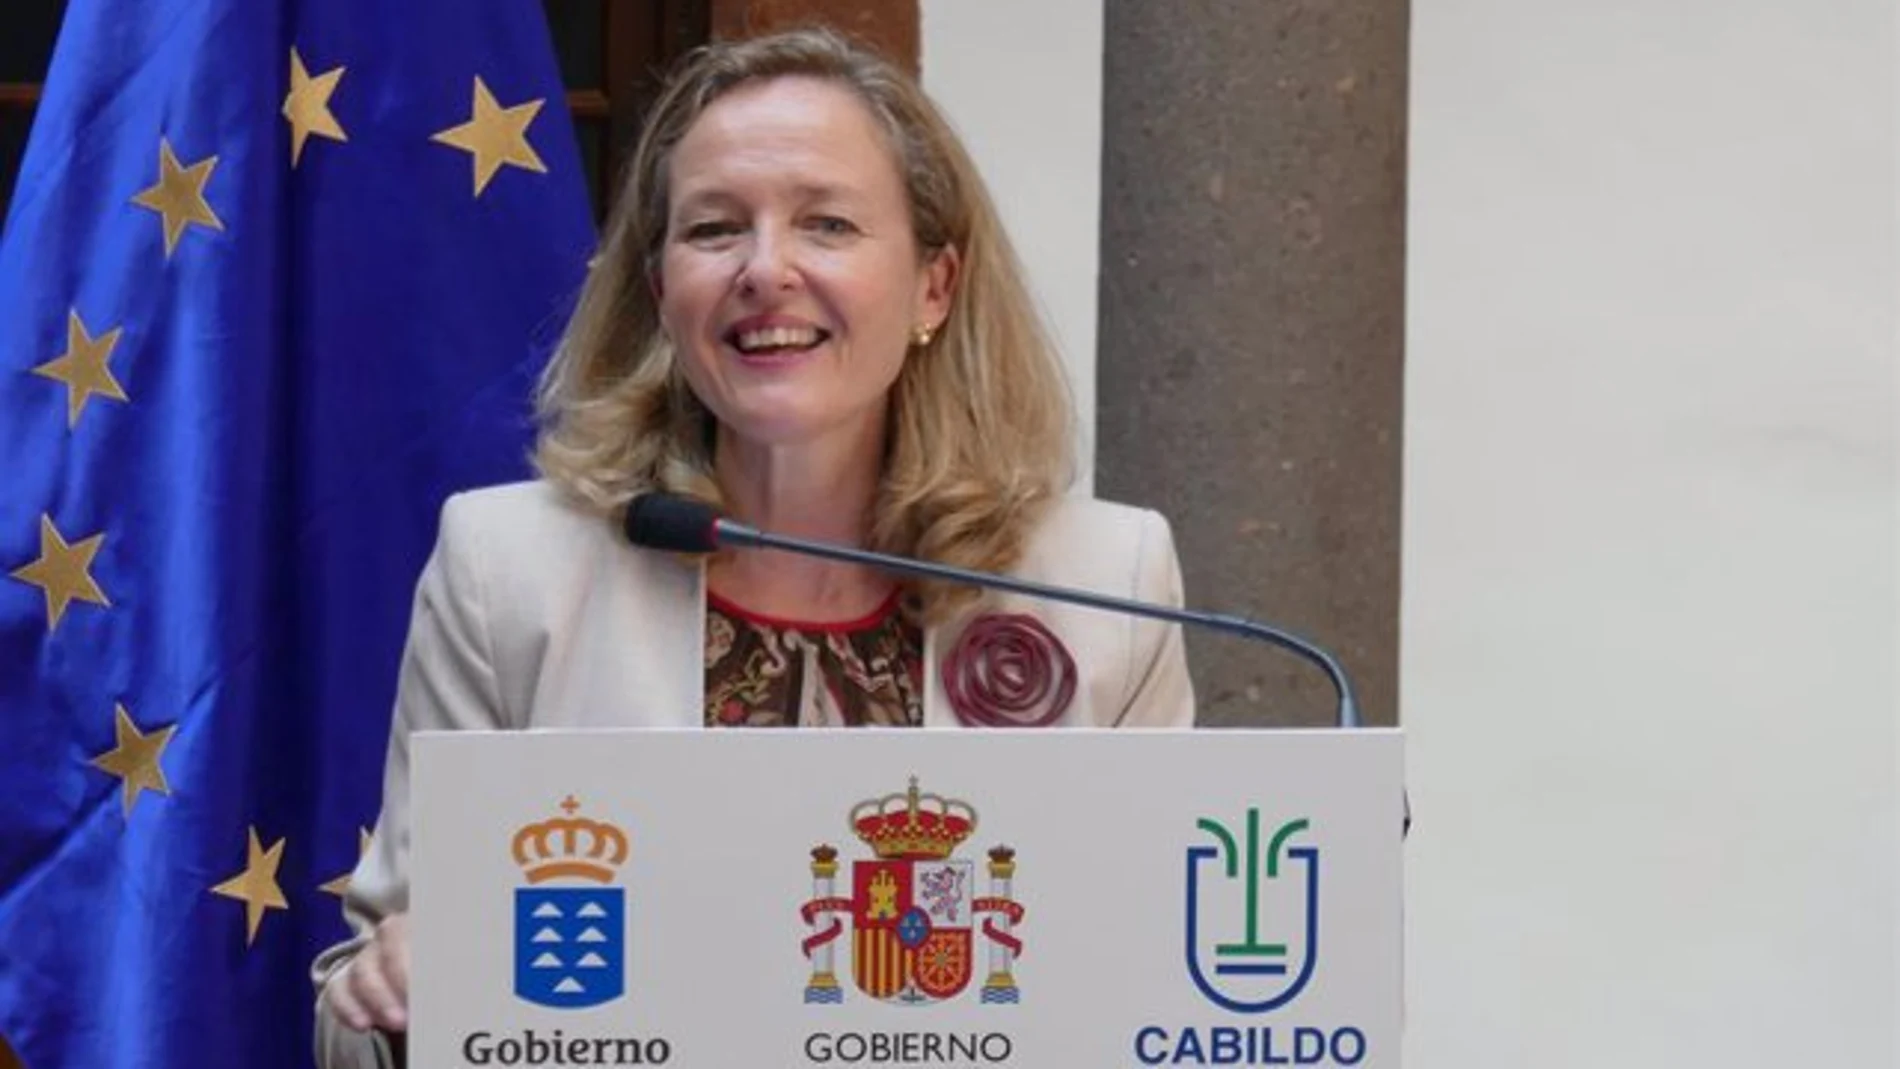 El Gobierno propondrá a La Palma como sede de la reunión de ministros digitales de la OCDE